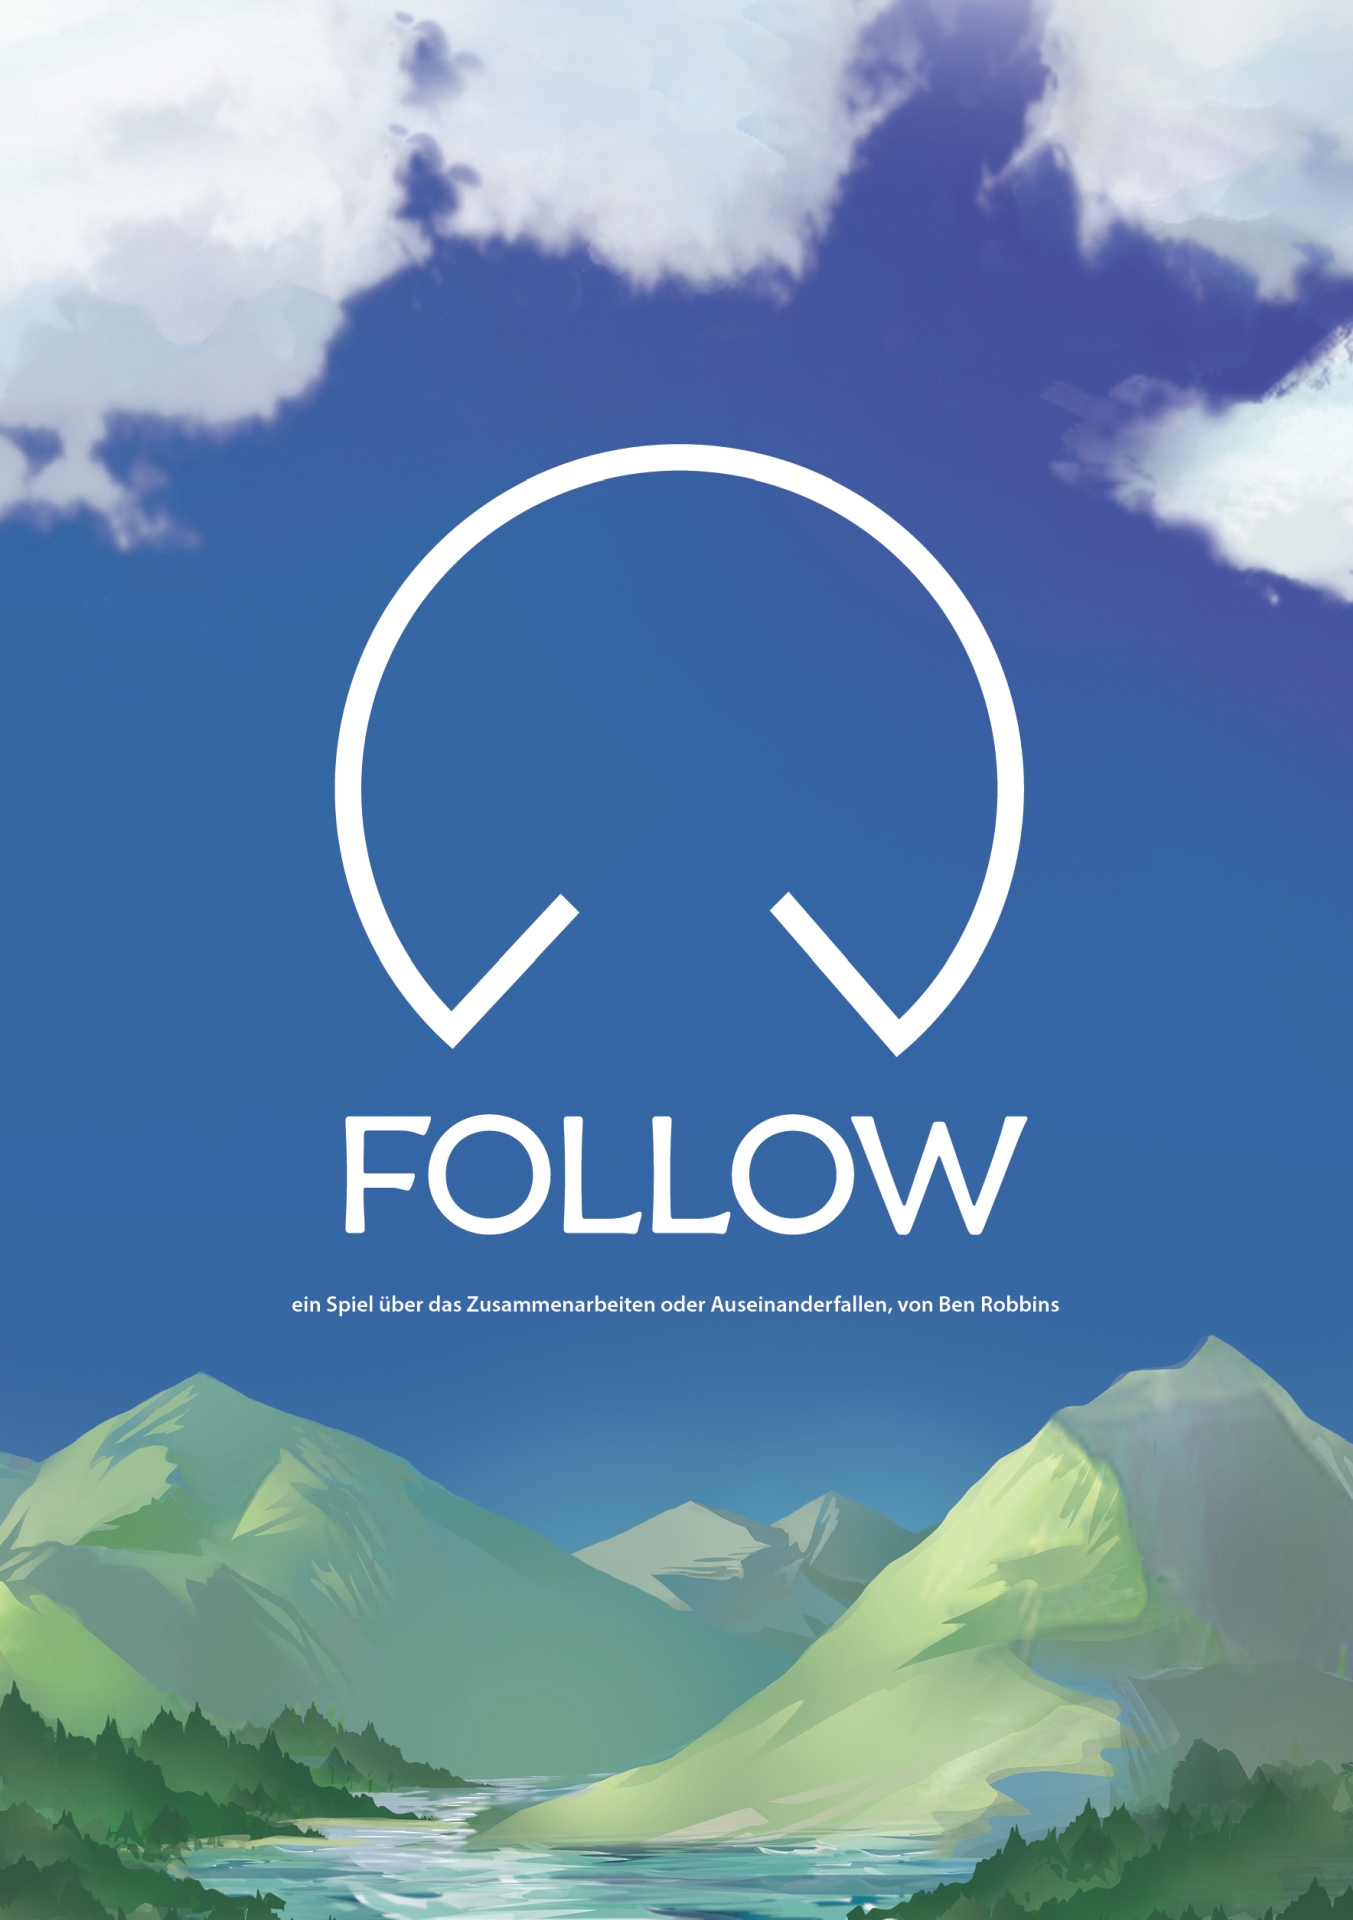 Vorschau auf das Cover von Follow. Vor einem blauen Himmel mit weißen Wölkchen und einer grün-grauen Berglandschaft sieht man den Titel und das Logo des Spiels.